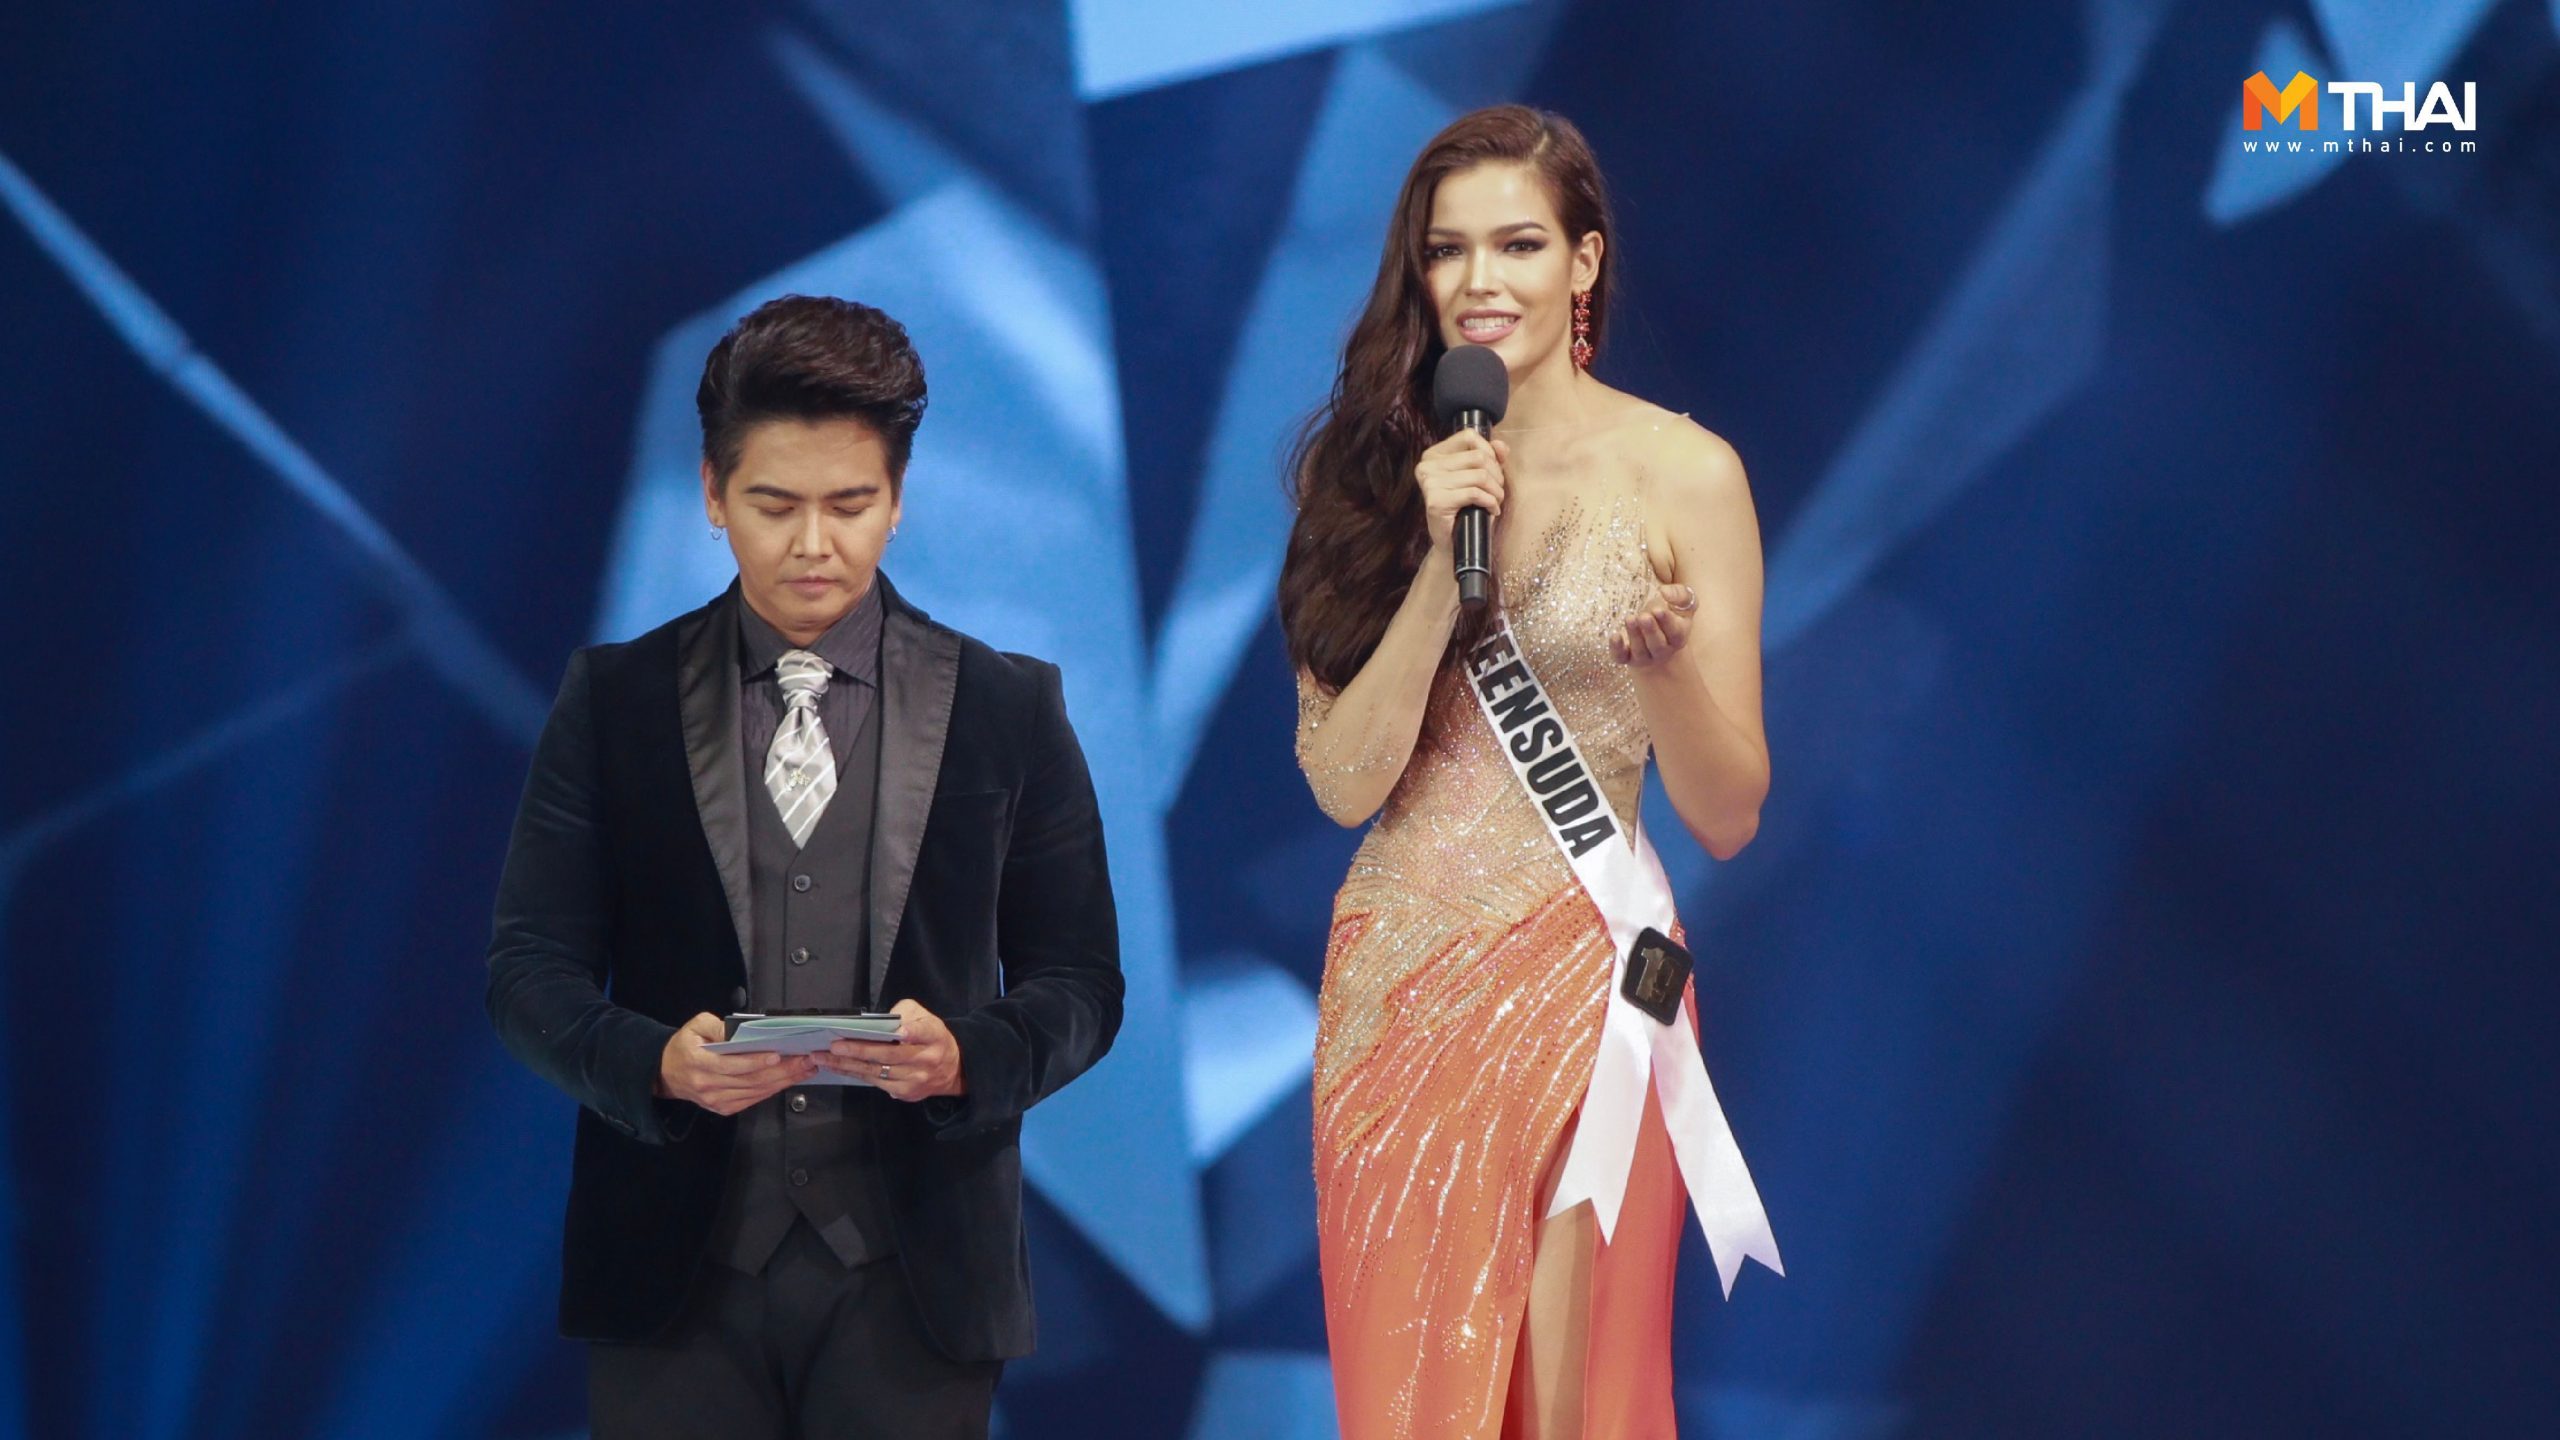 Miss Universe Thailand Miss Universe Thailand 2019 คำถามมิสยูนิเวิร์สไทยแลนด์ คำถามรอบตัดสินมิสยูนิเวิร์สไทยแลนด์ 2018 นางงามตอบคำถาม ประกวดนางงาม มิสยูนิเวิร์สไทยแลนด์ มิสยูนิเวิร์สไทยแลนด์ 2019